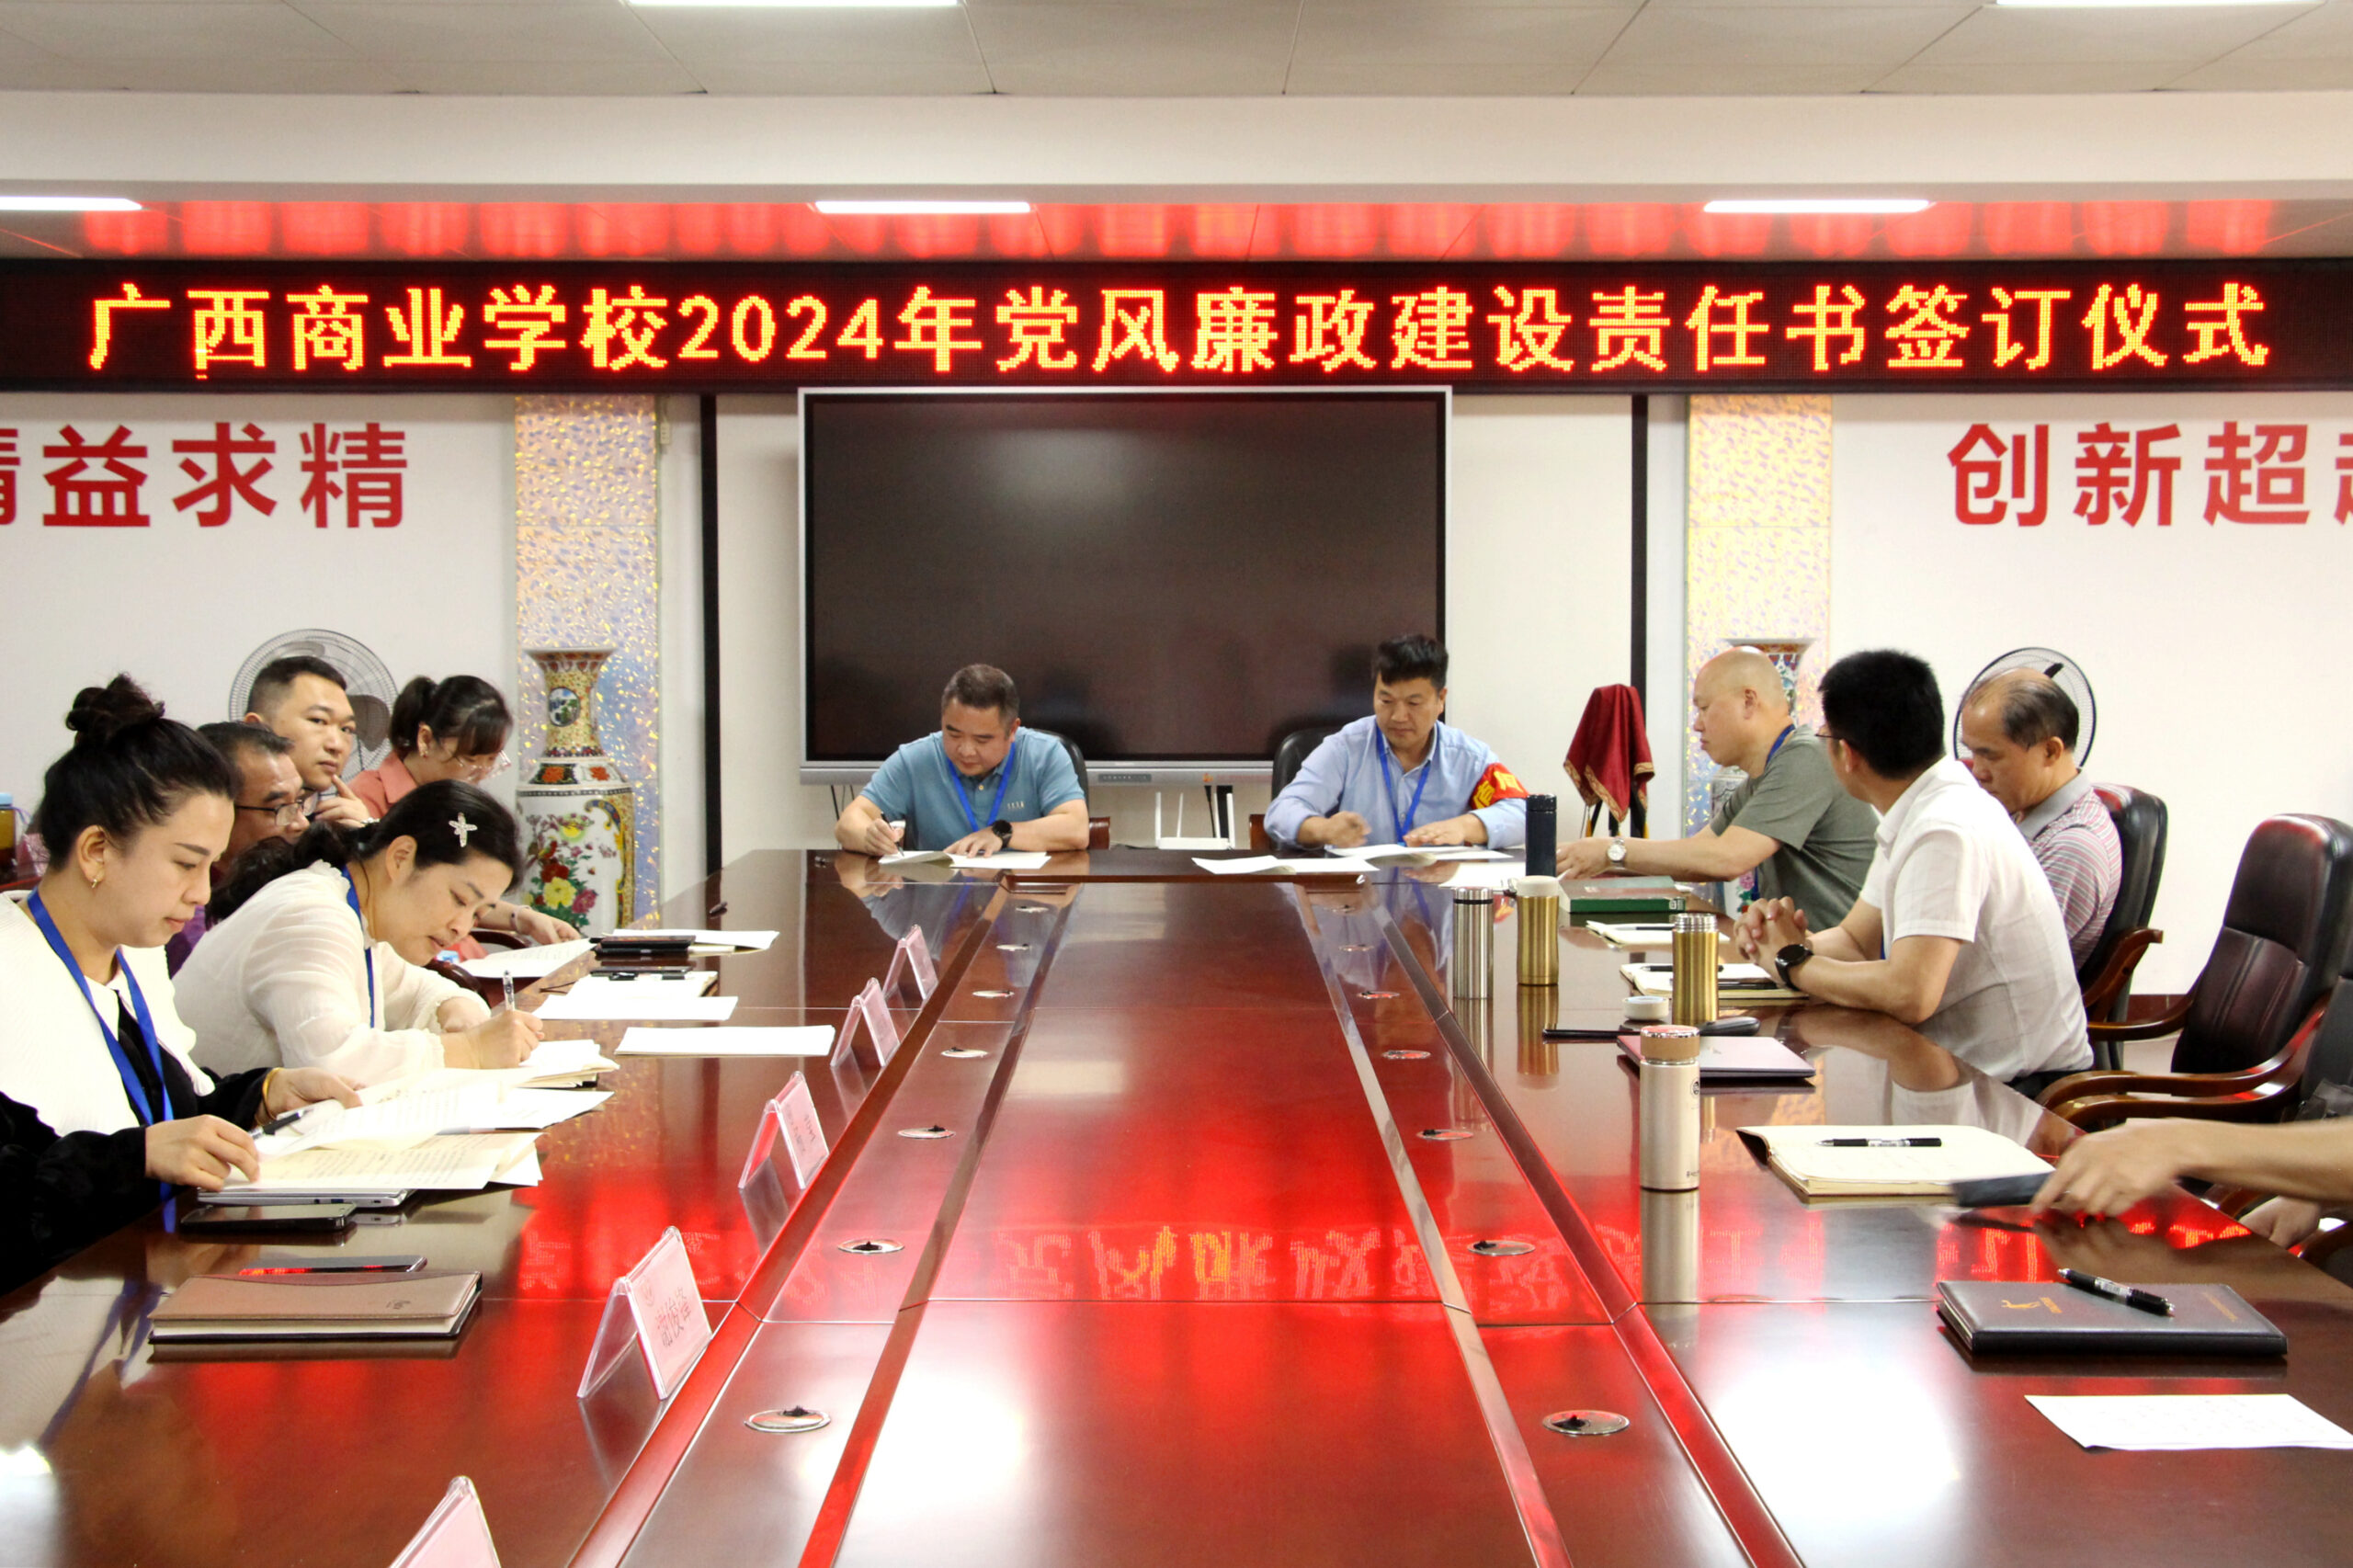 广西商业学校举行2024年党风廉政建设及落实意识形态工作责任书签订仪式